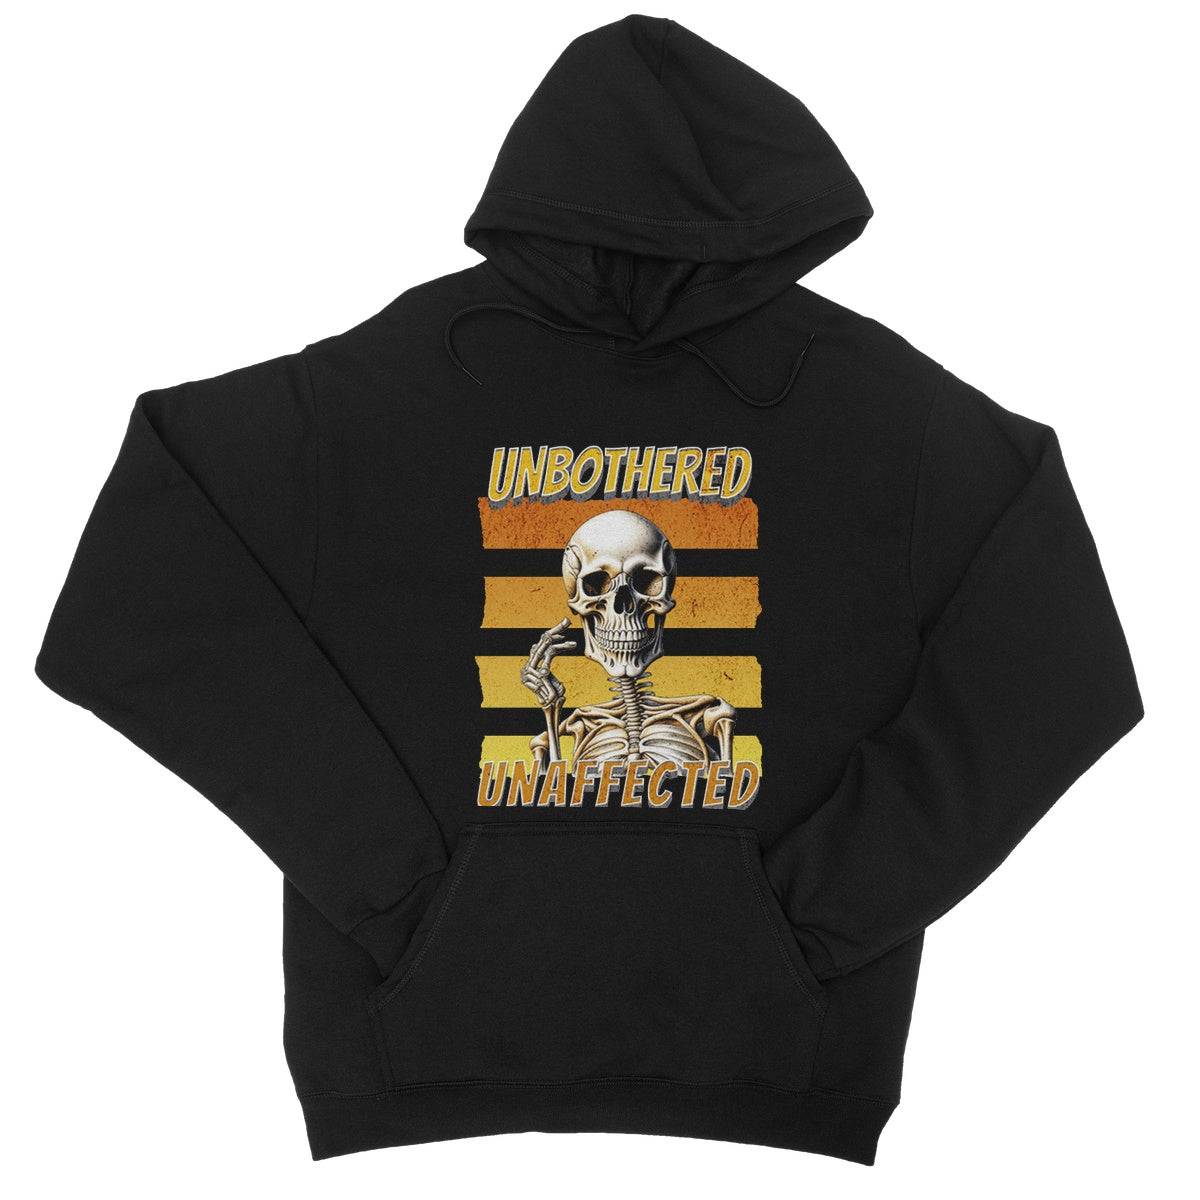 unbothered unaffected hoodie black